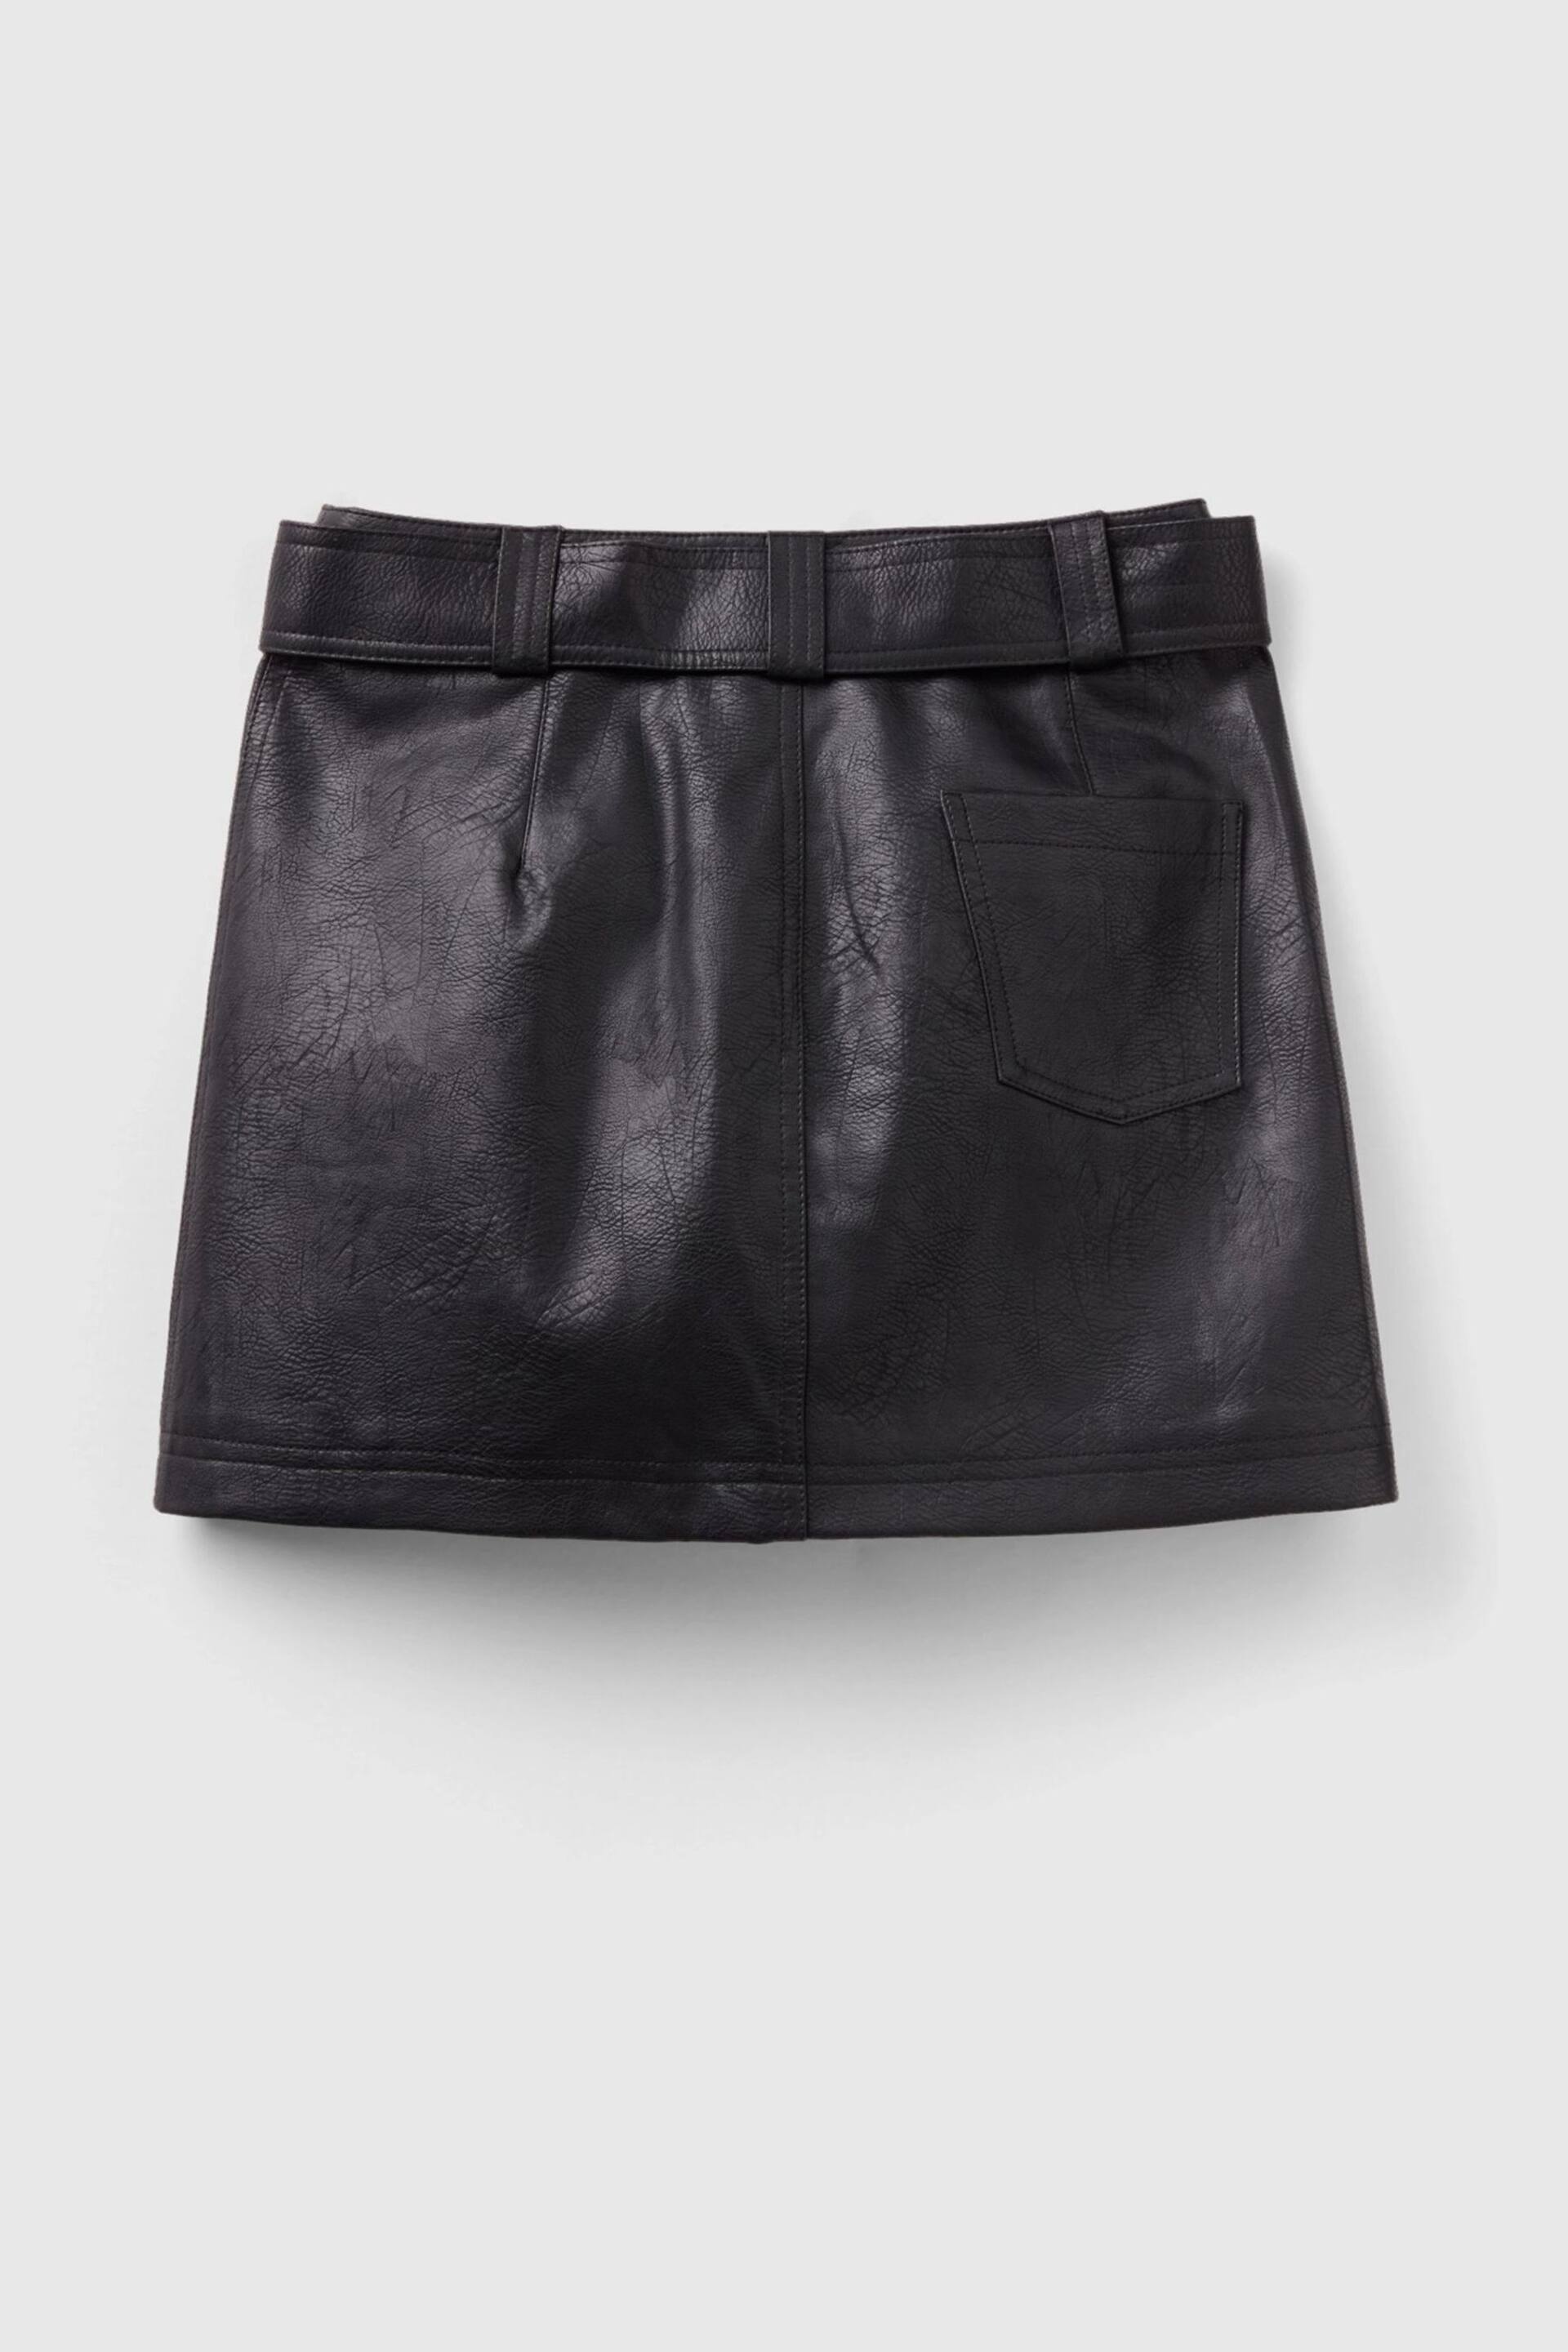 Benetton Womens Mini Black Cargo Skirt - Image 5 of 5